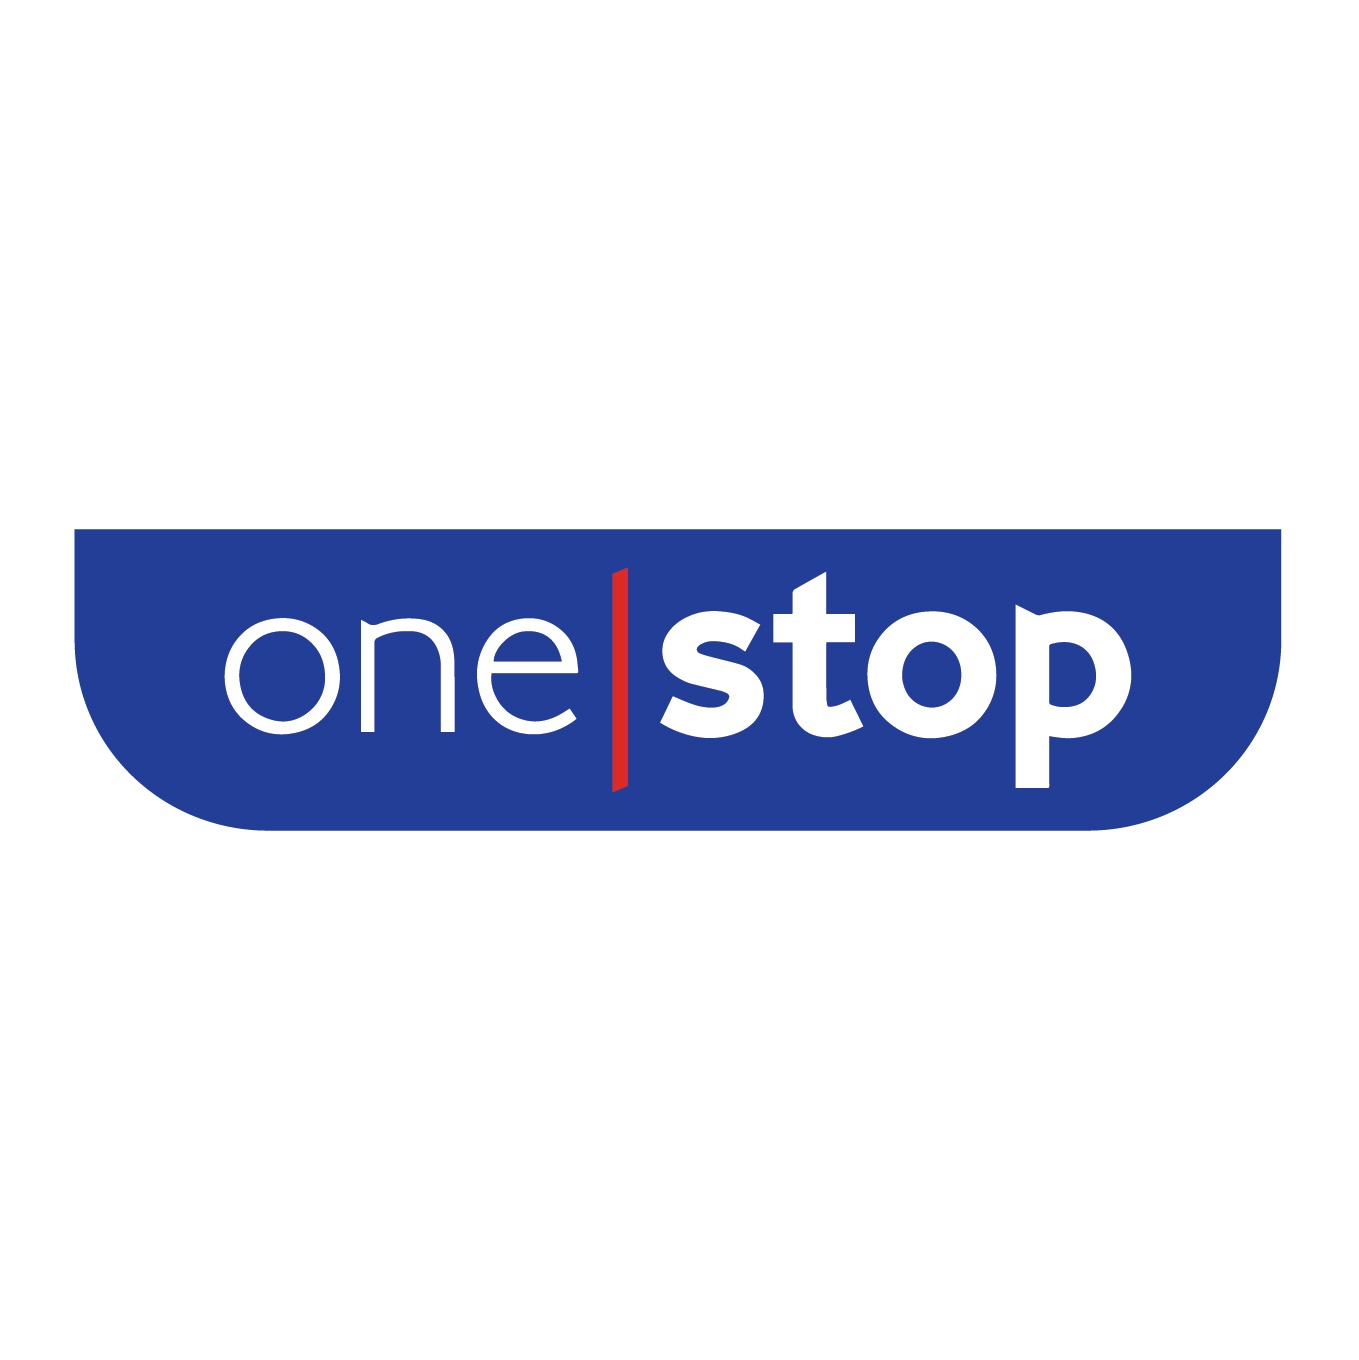 (c) Onestop.co.uk